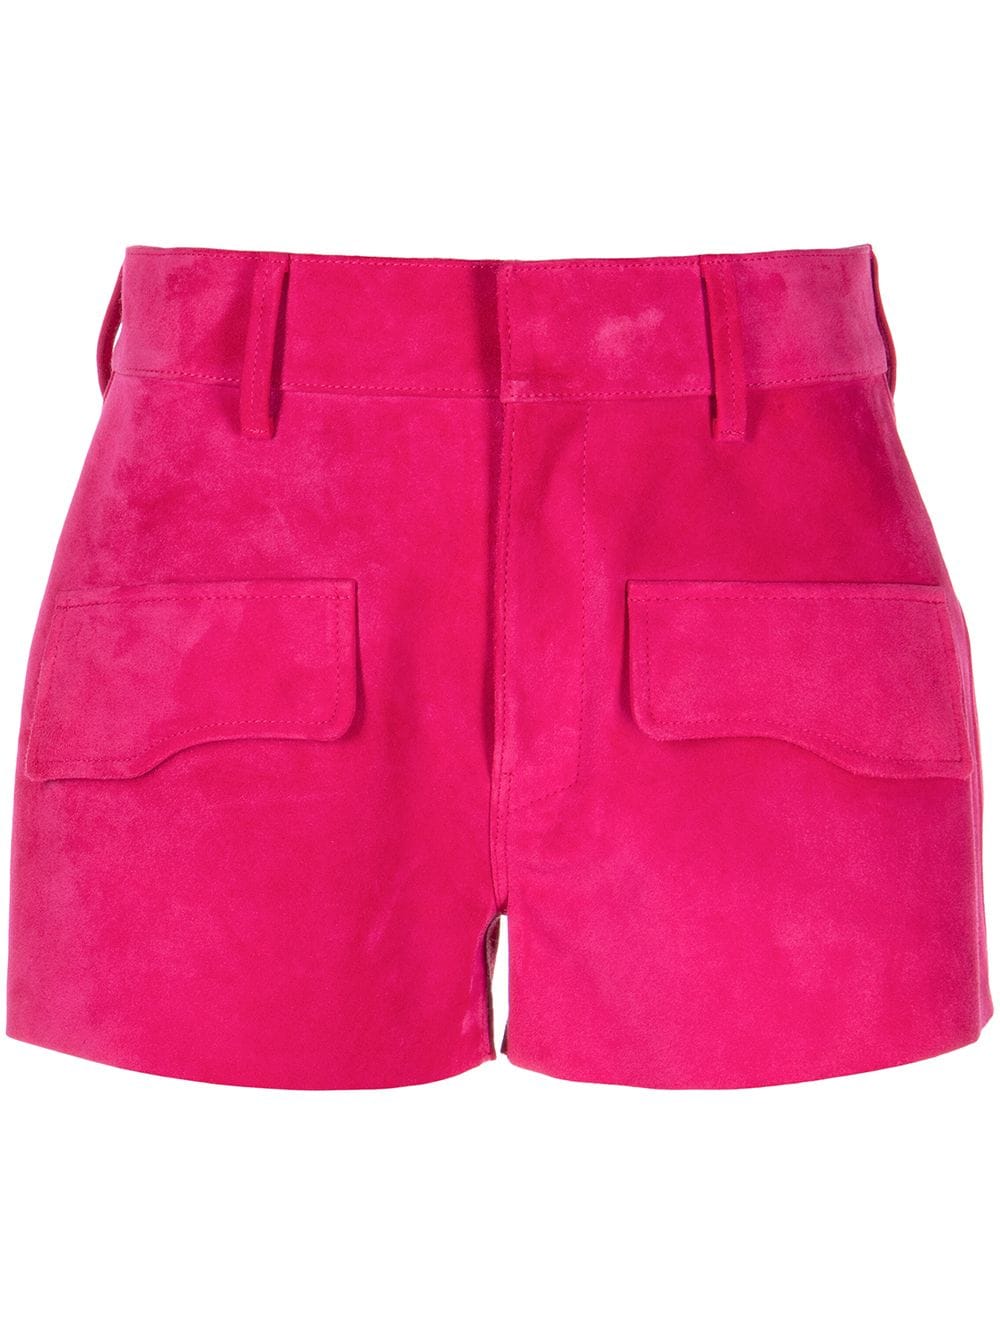 RTA Shane suede shorts - Pink von RTA